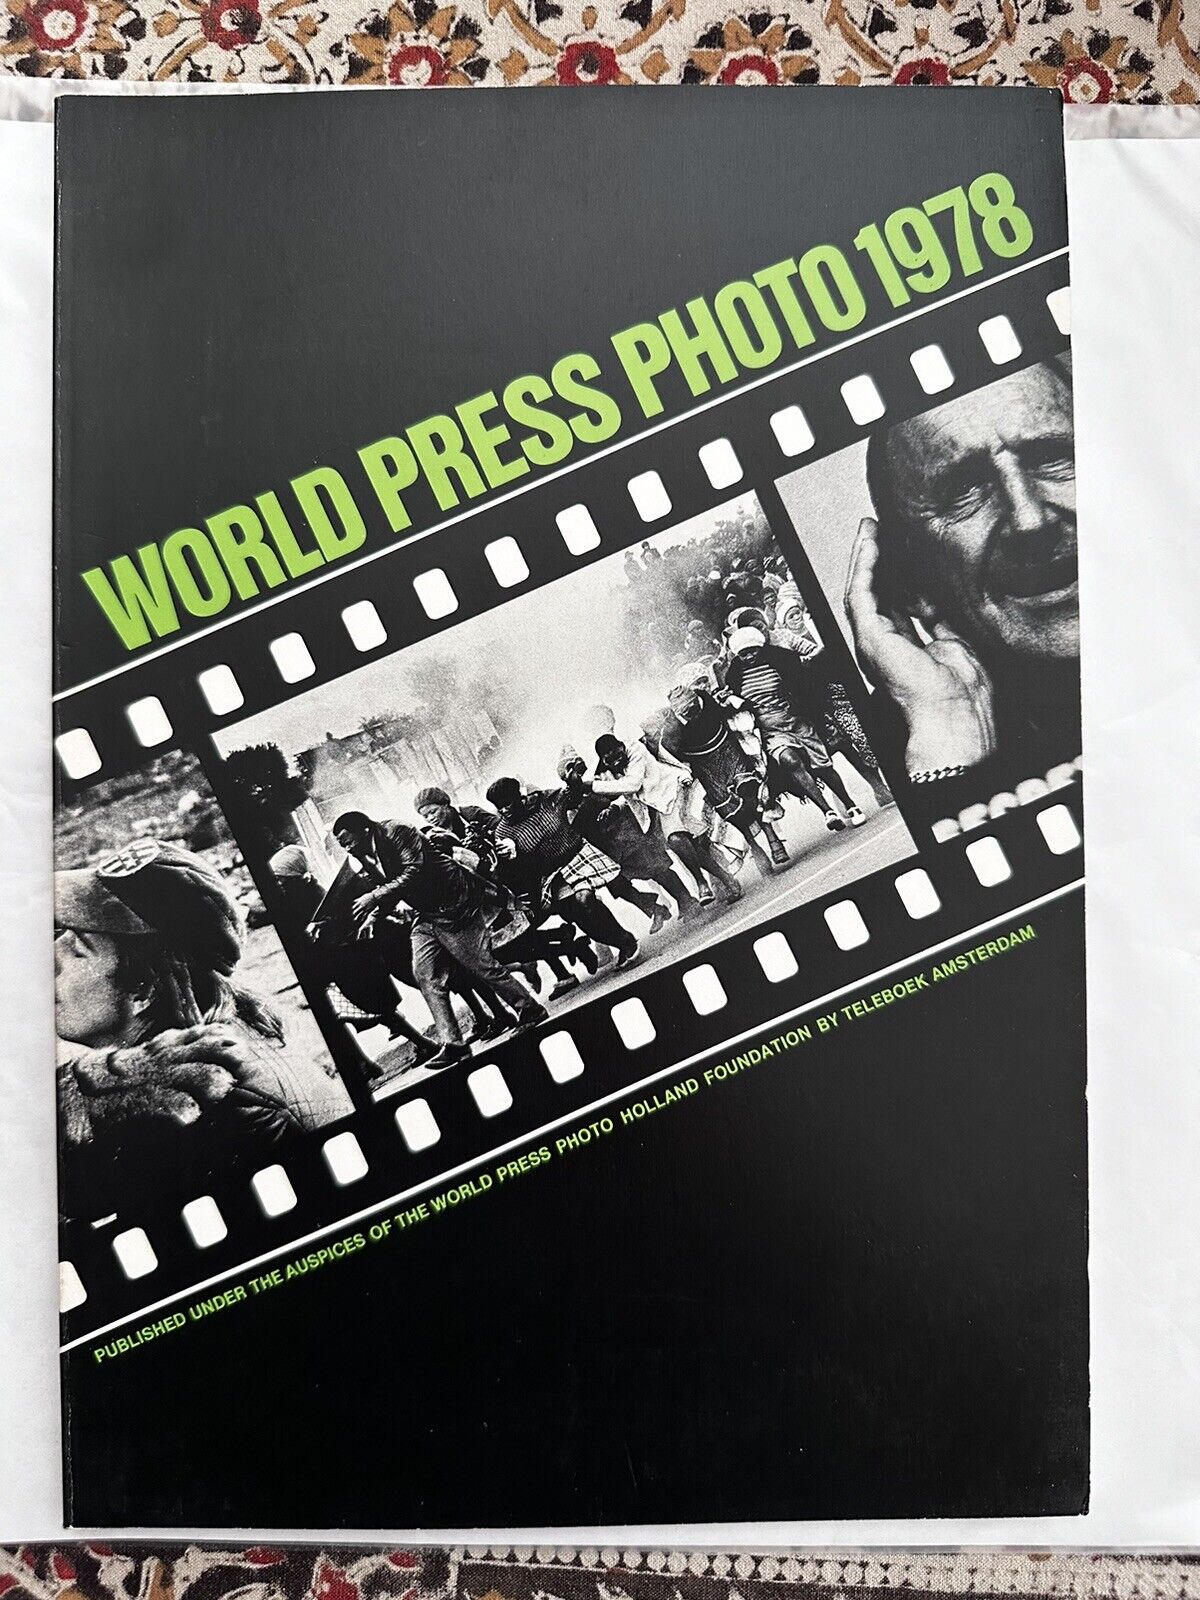 Vintage World Press Photo 1978 Book Boek Jaarboek Teleboek Holland 